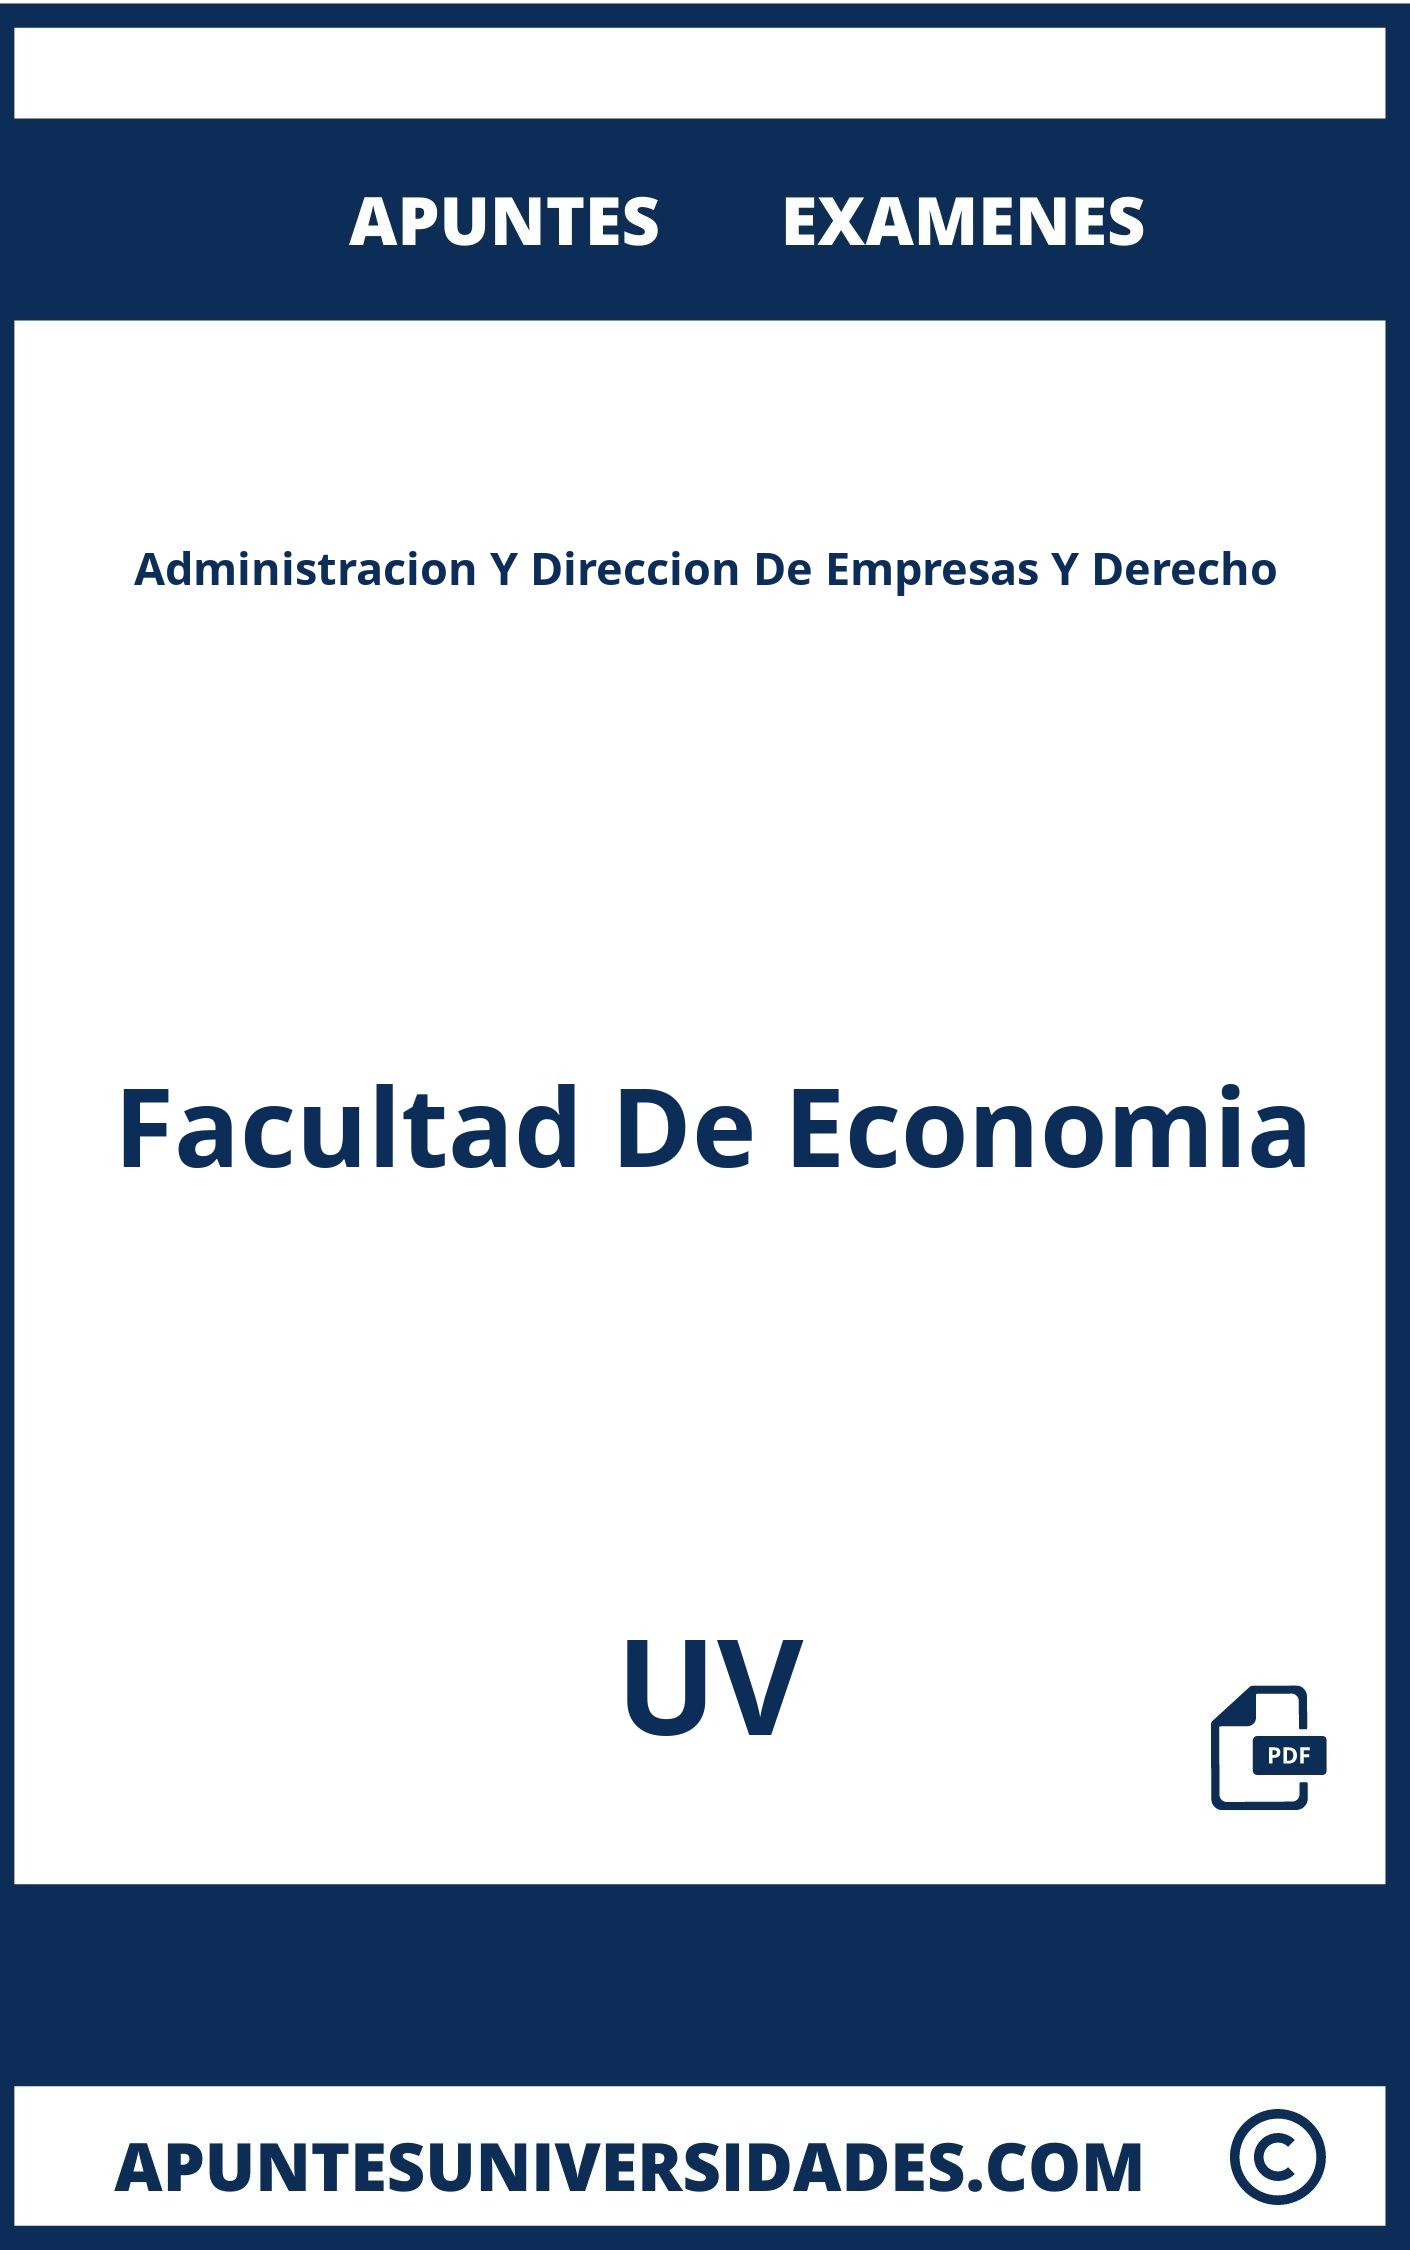 Examenes Apuntes Administracion Y Direccion De Empresas Y Derecho UV